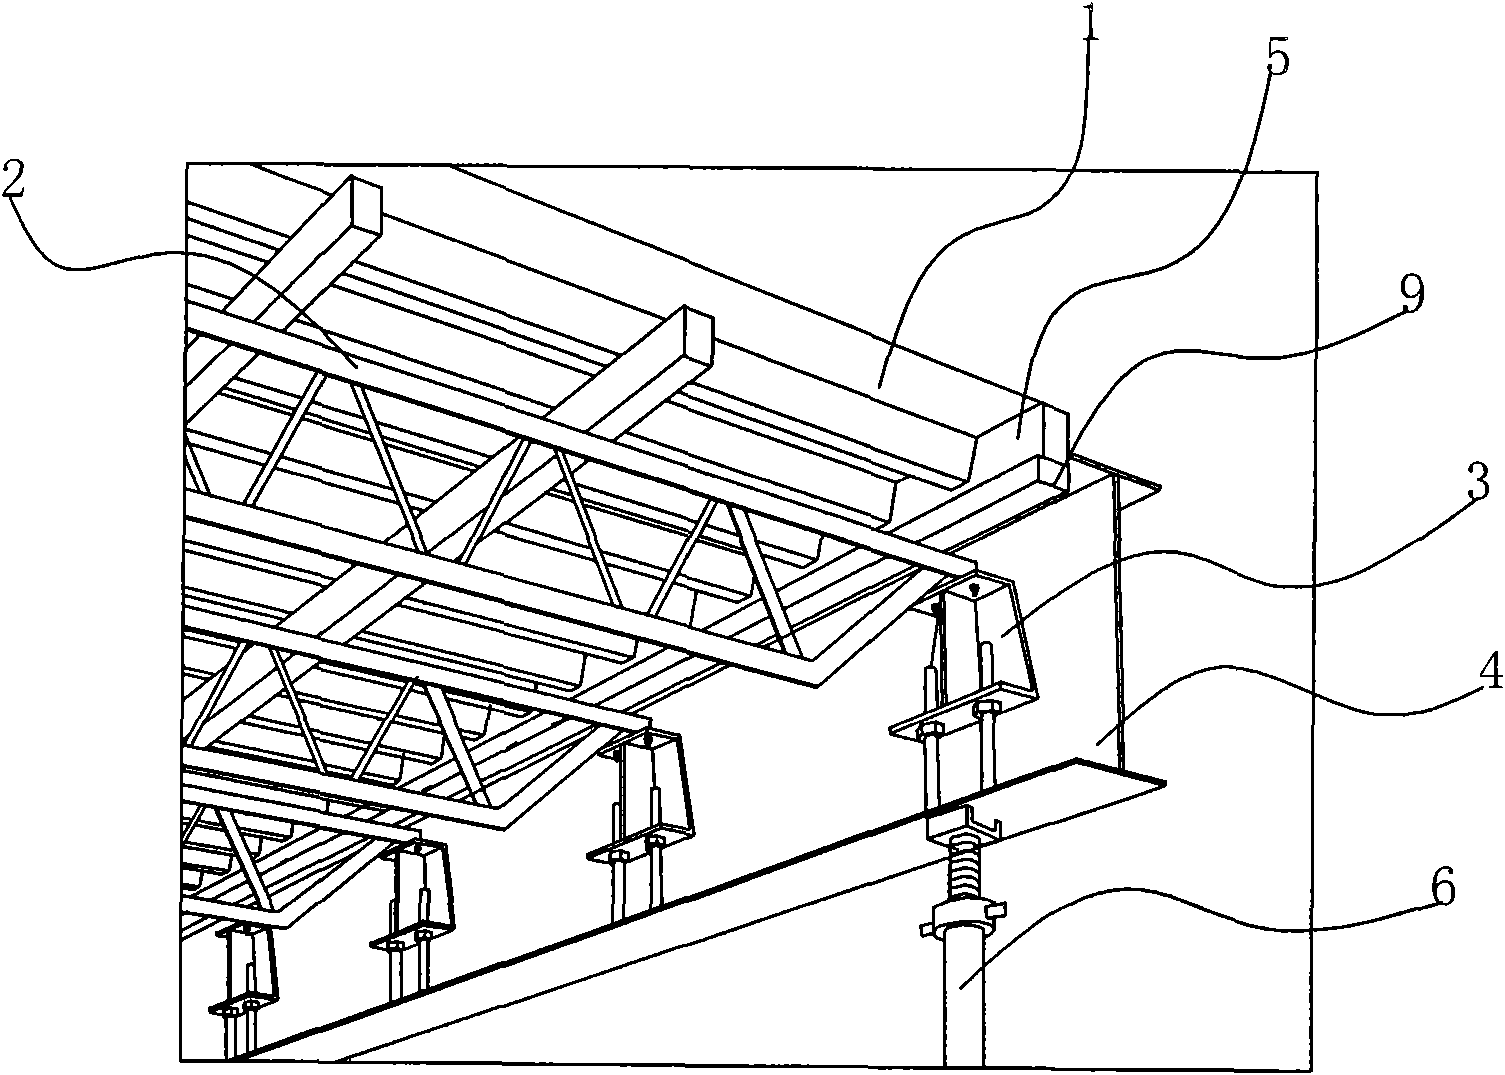 Long-slab-span steel beam cast-in-situ floor formwork system